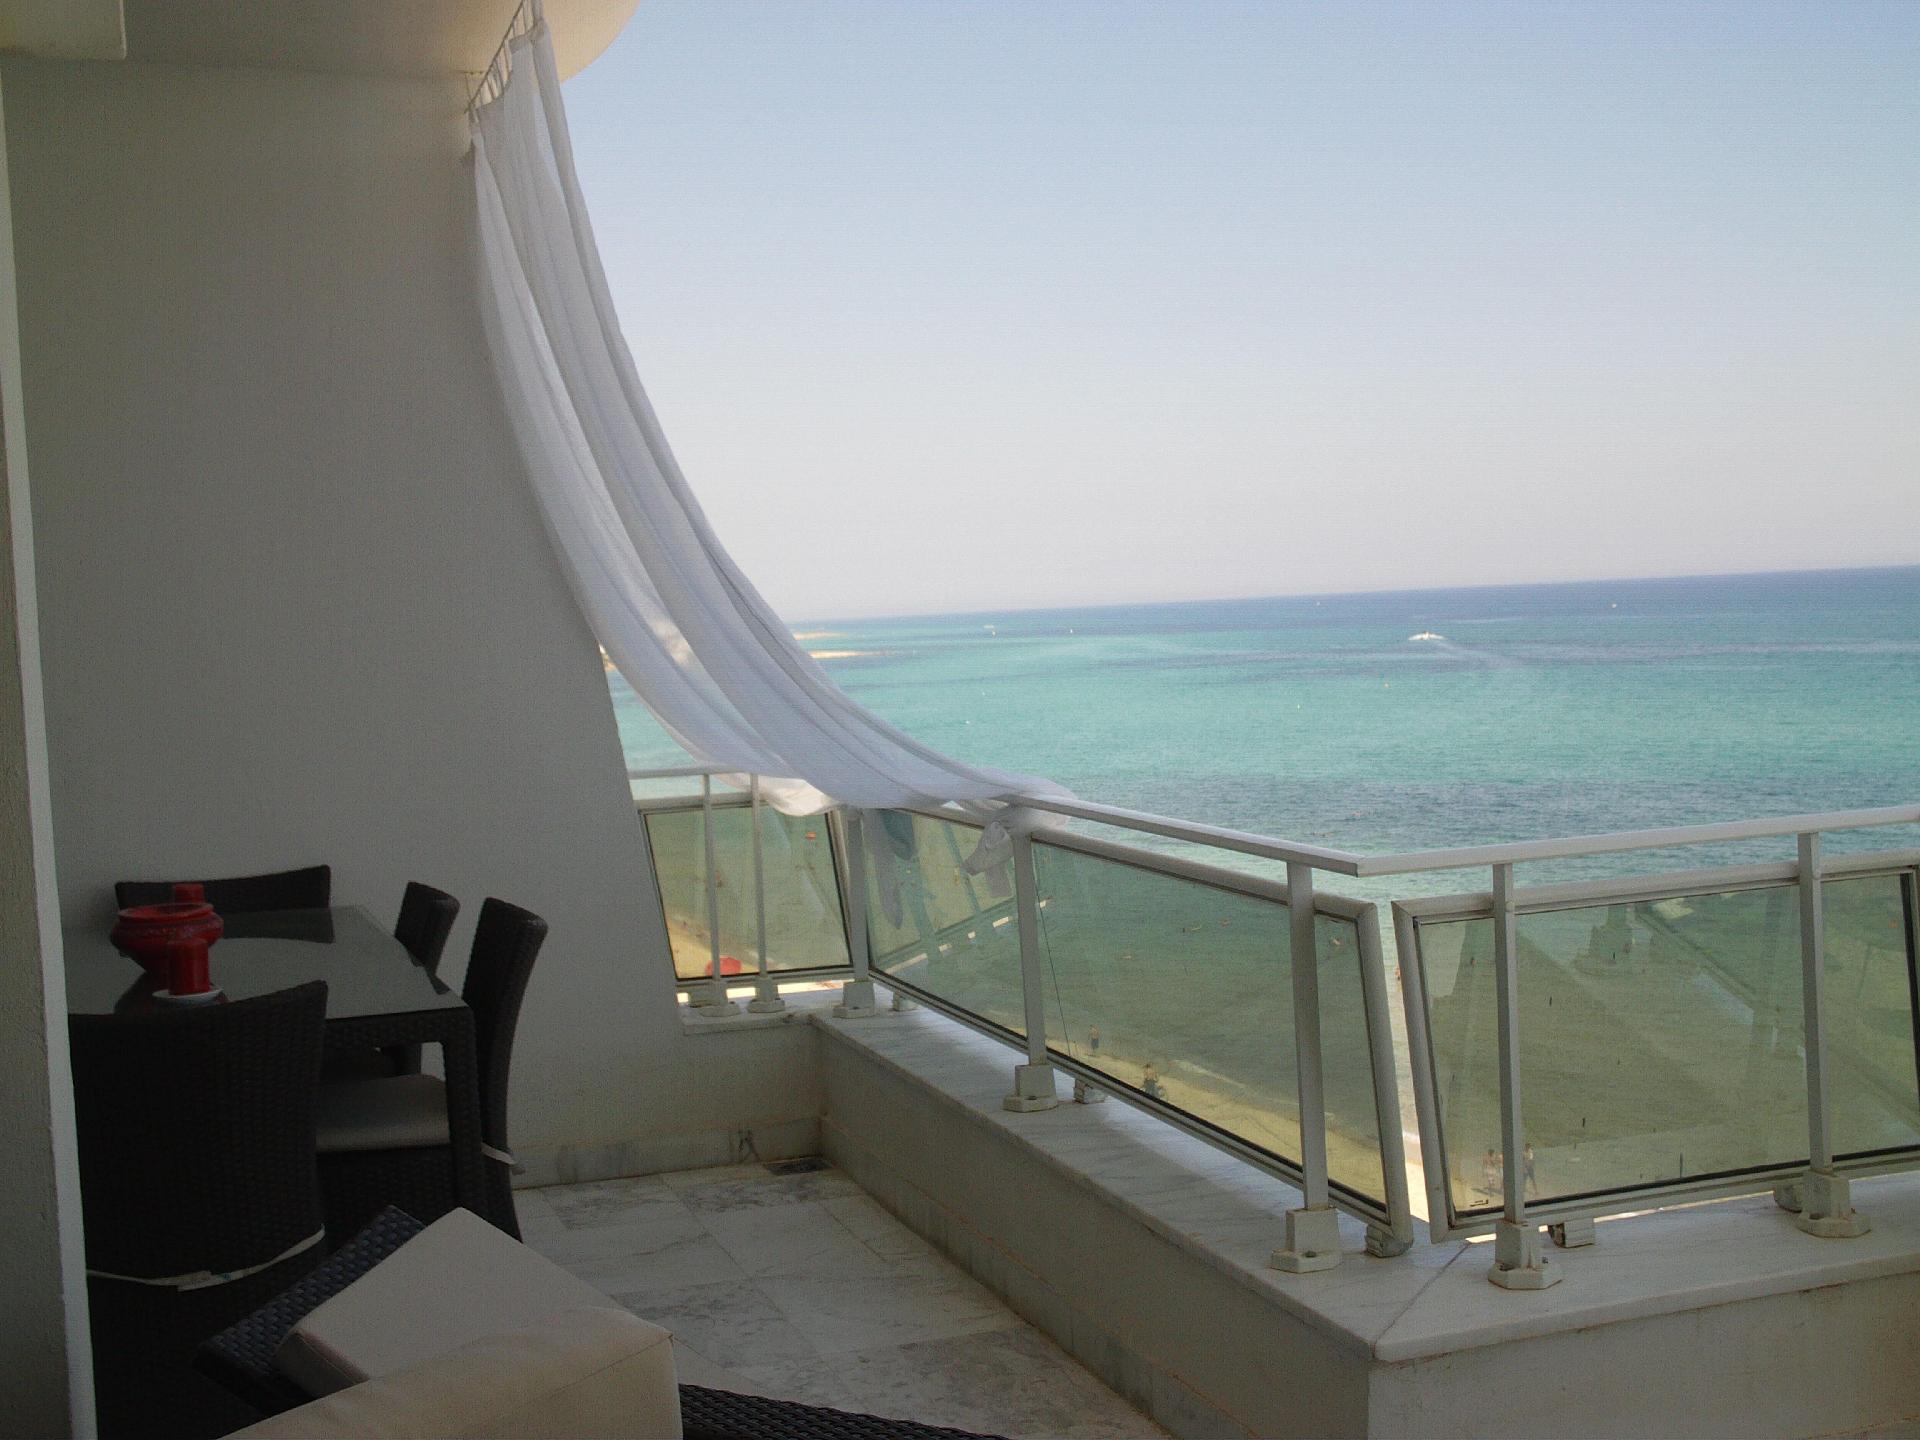 Ferienwohnung für 6 Personen ca. 270 m²  Ferienwohnung in Tunesien